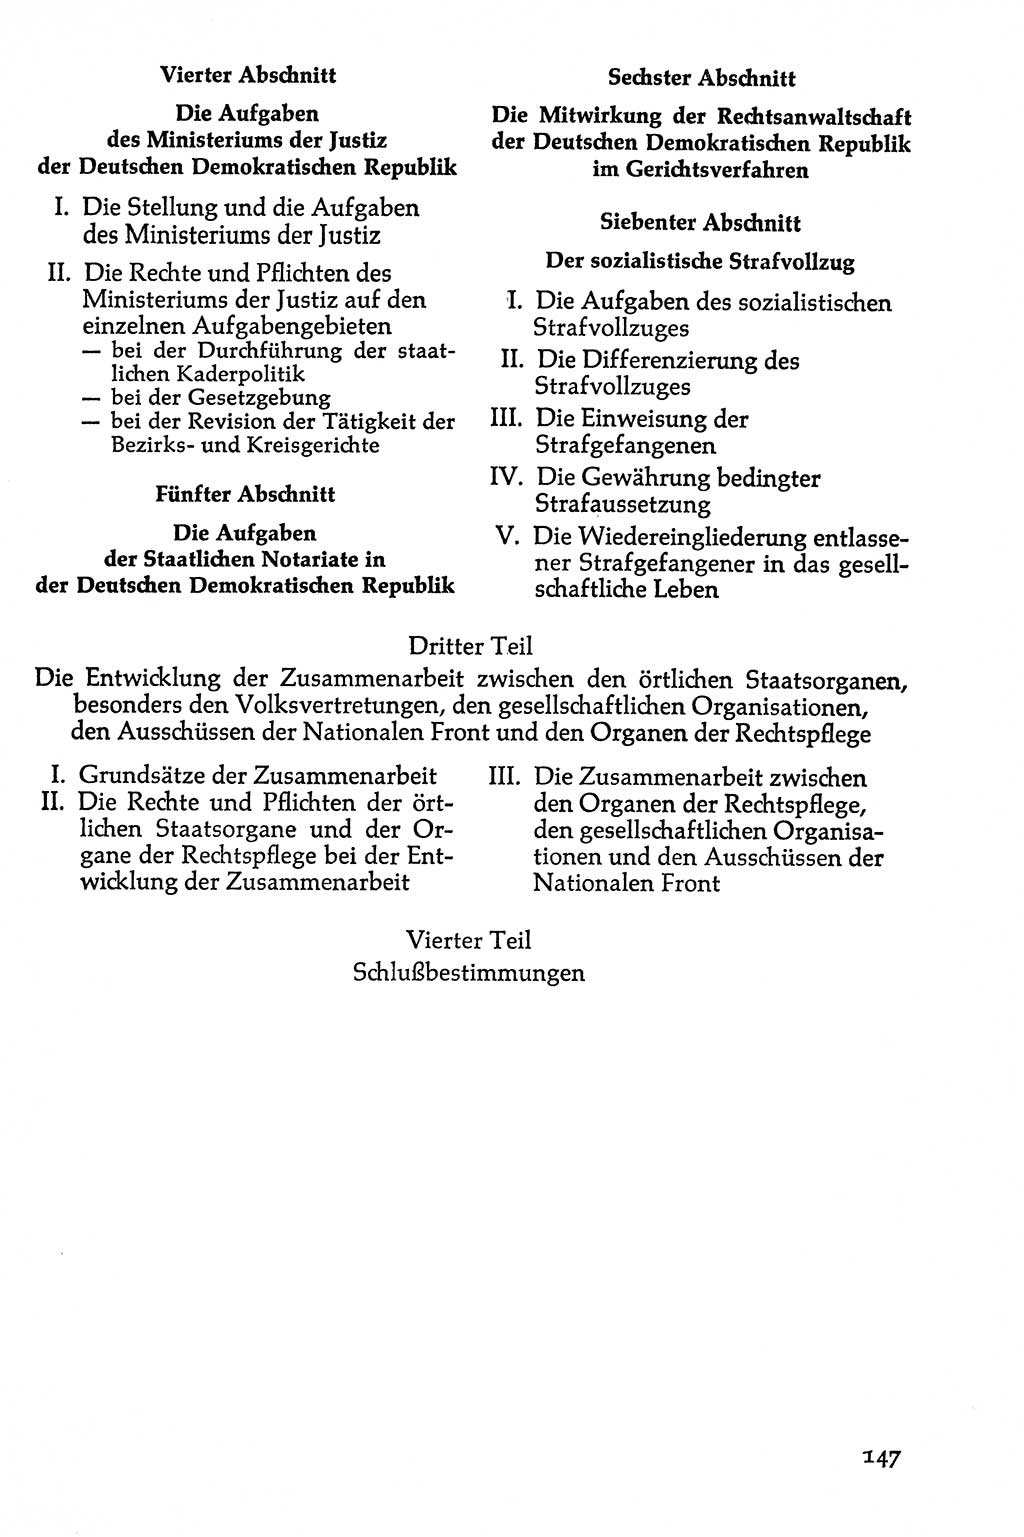 Volksdemokratische Ordnung in Mitteldeutschland [Deutsche Demokratische Republik (DDR)], Texte zur verfassungsrechtlichen Situation 1963, Seite 147 (Volksdem. Ordn. Md. DDR 1963, S. 147)